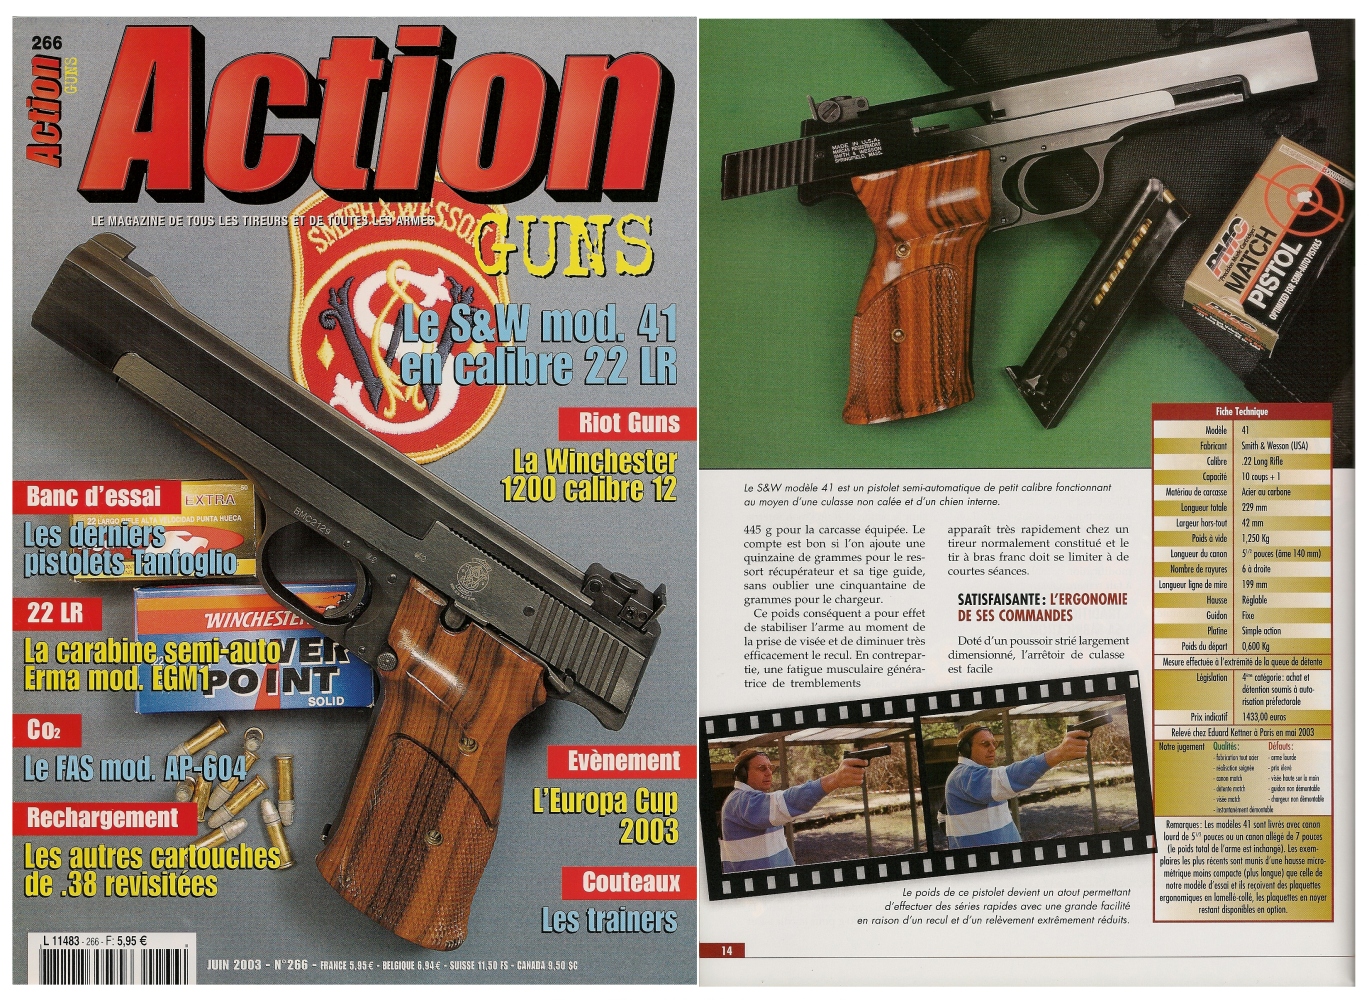 Le banc d'essai du pistolet Smith & Wesson modèle 41 a été publié sur 8 pages dans le magazine Action Guns n°266 (juin 2003). 